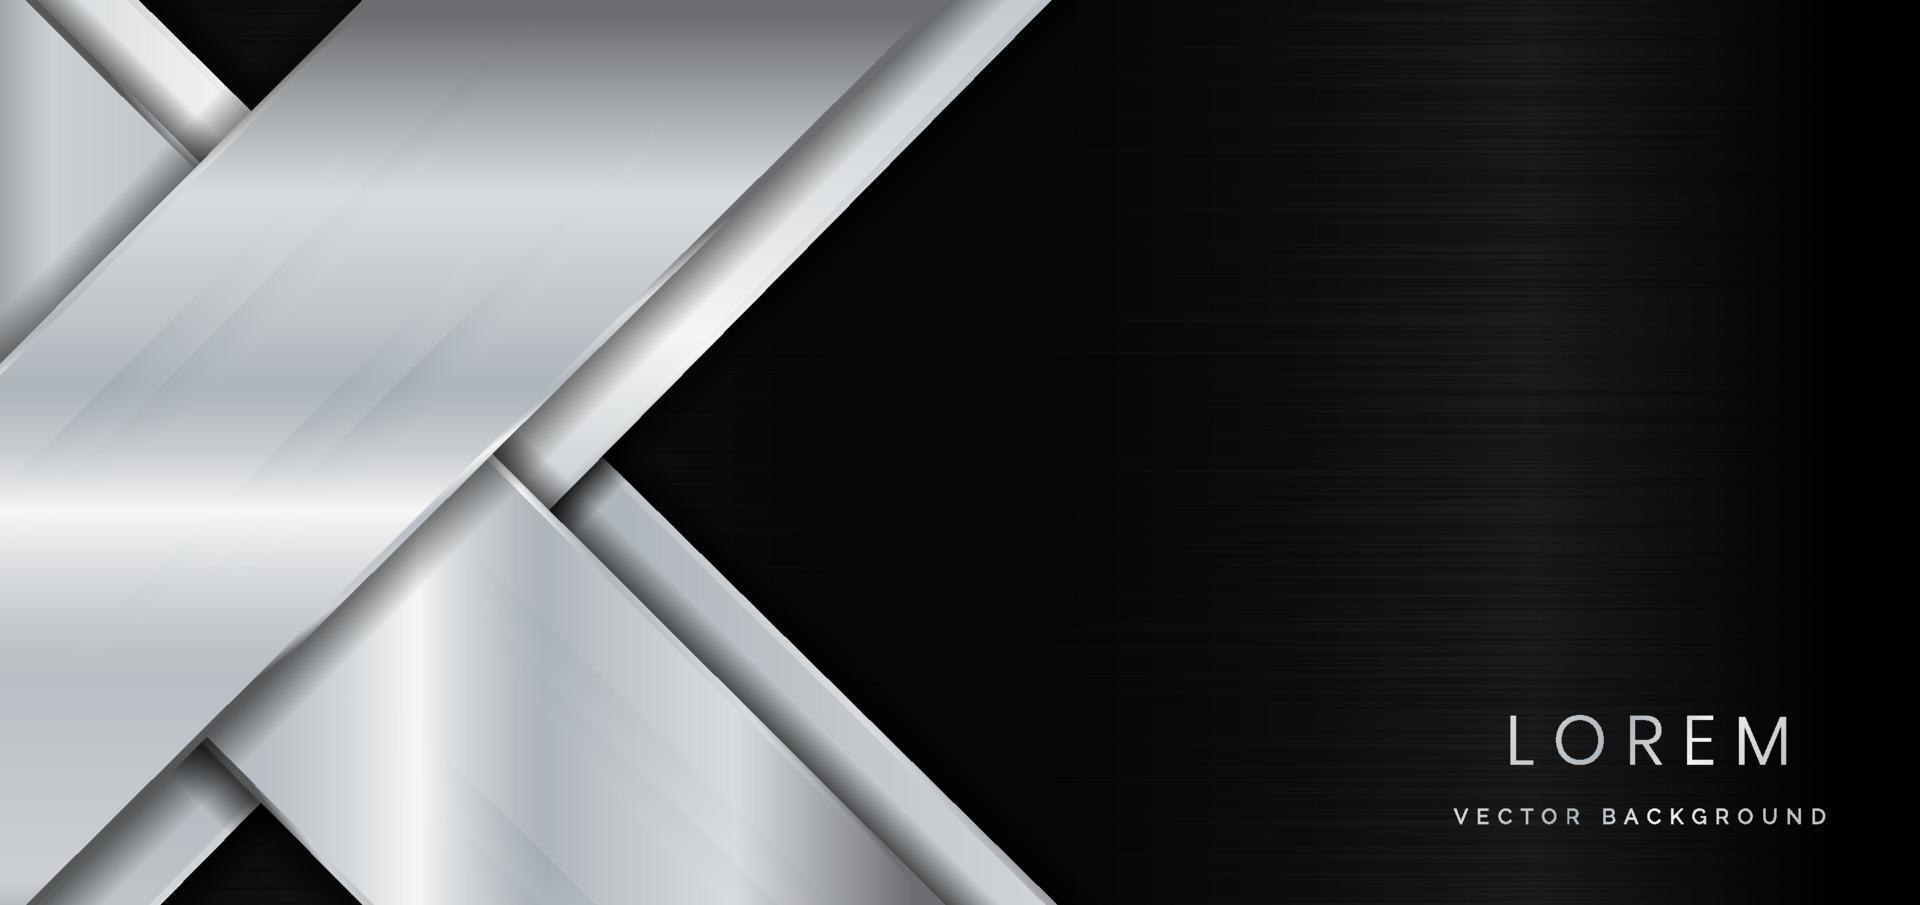 abstrakt mall geometrisk silvermetall diagonal på metall svart bakgrund med kopia utrymme för text. vektor